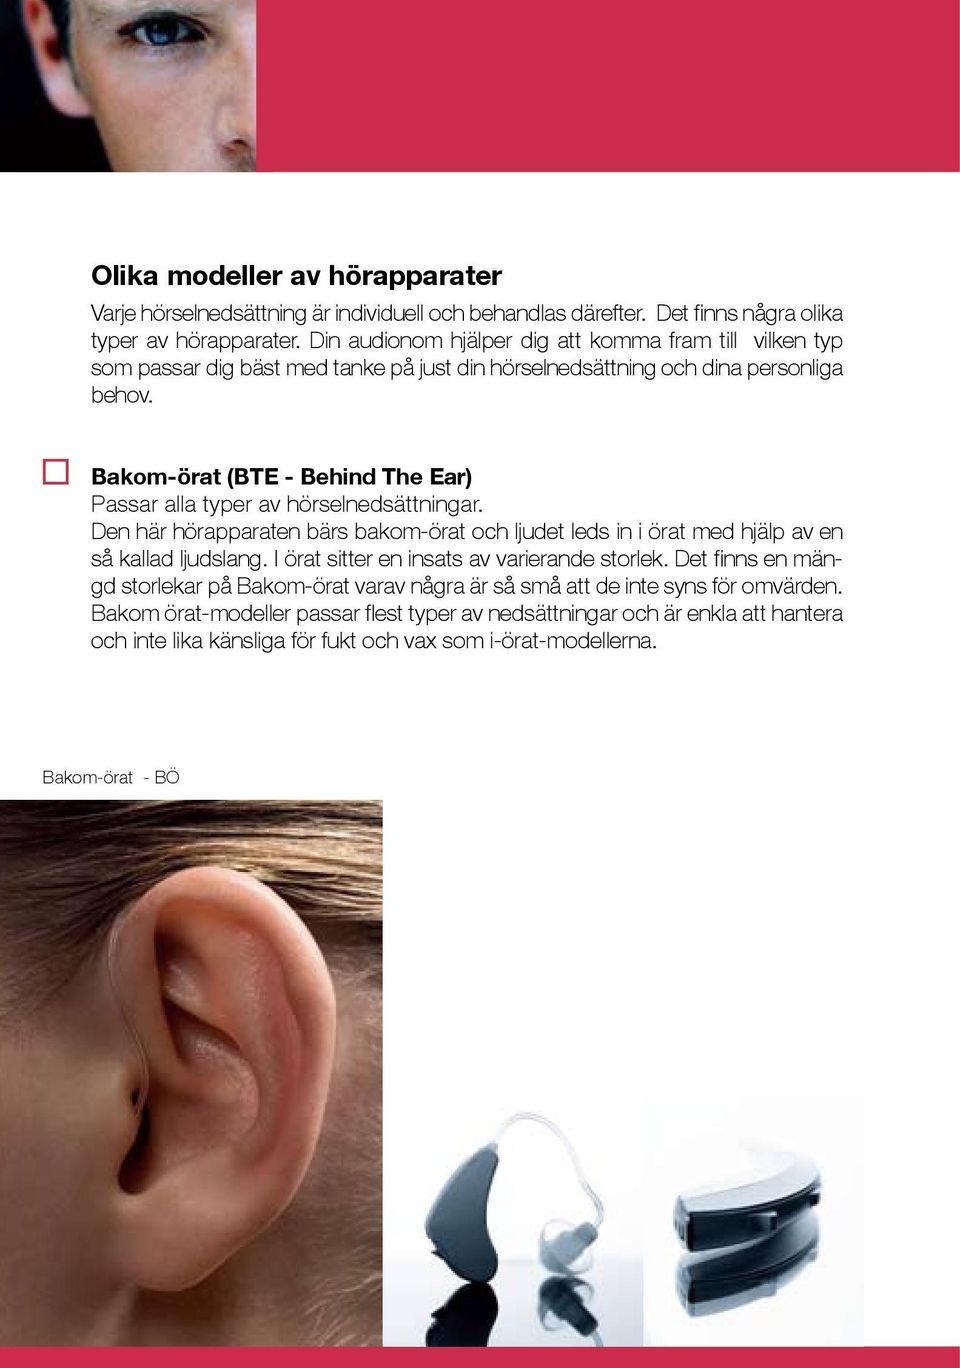 Bakom-örat (BTE - Behind The Ear) Passar alla typer av hörselnedsättningar. Den här hörapparaten bärs bakom-örat och ljudet leds in i örat med hjälp av en så kallad ljudslang.